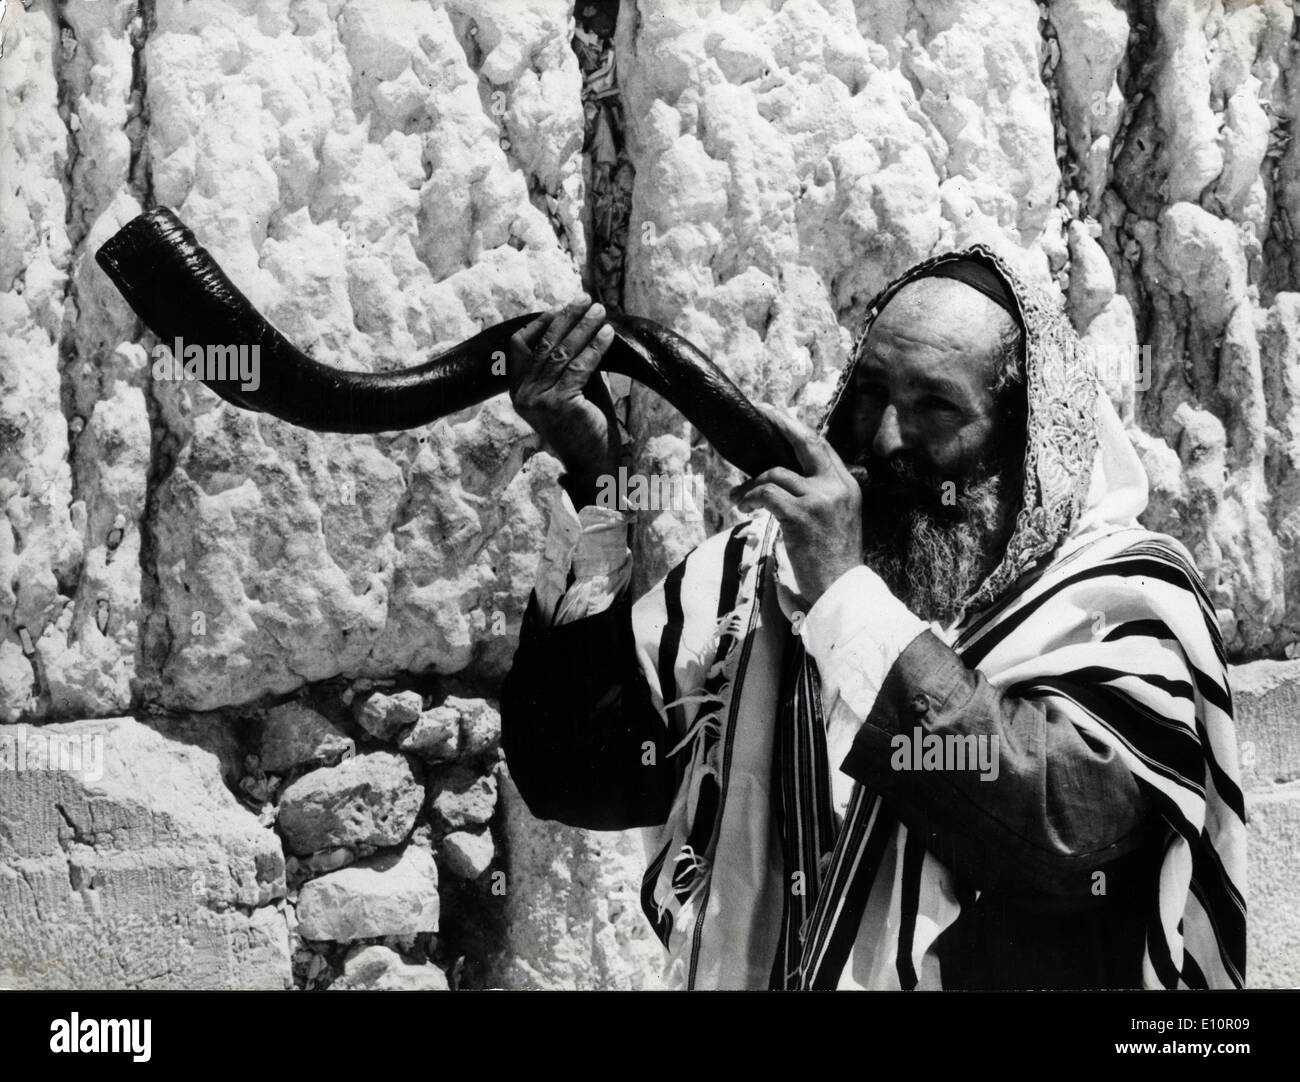 Un rabbin fait de la musique avec un chofar utilisé traditionnellement sur les fêtes juives Banque D'Images